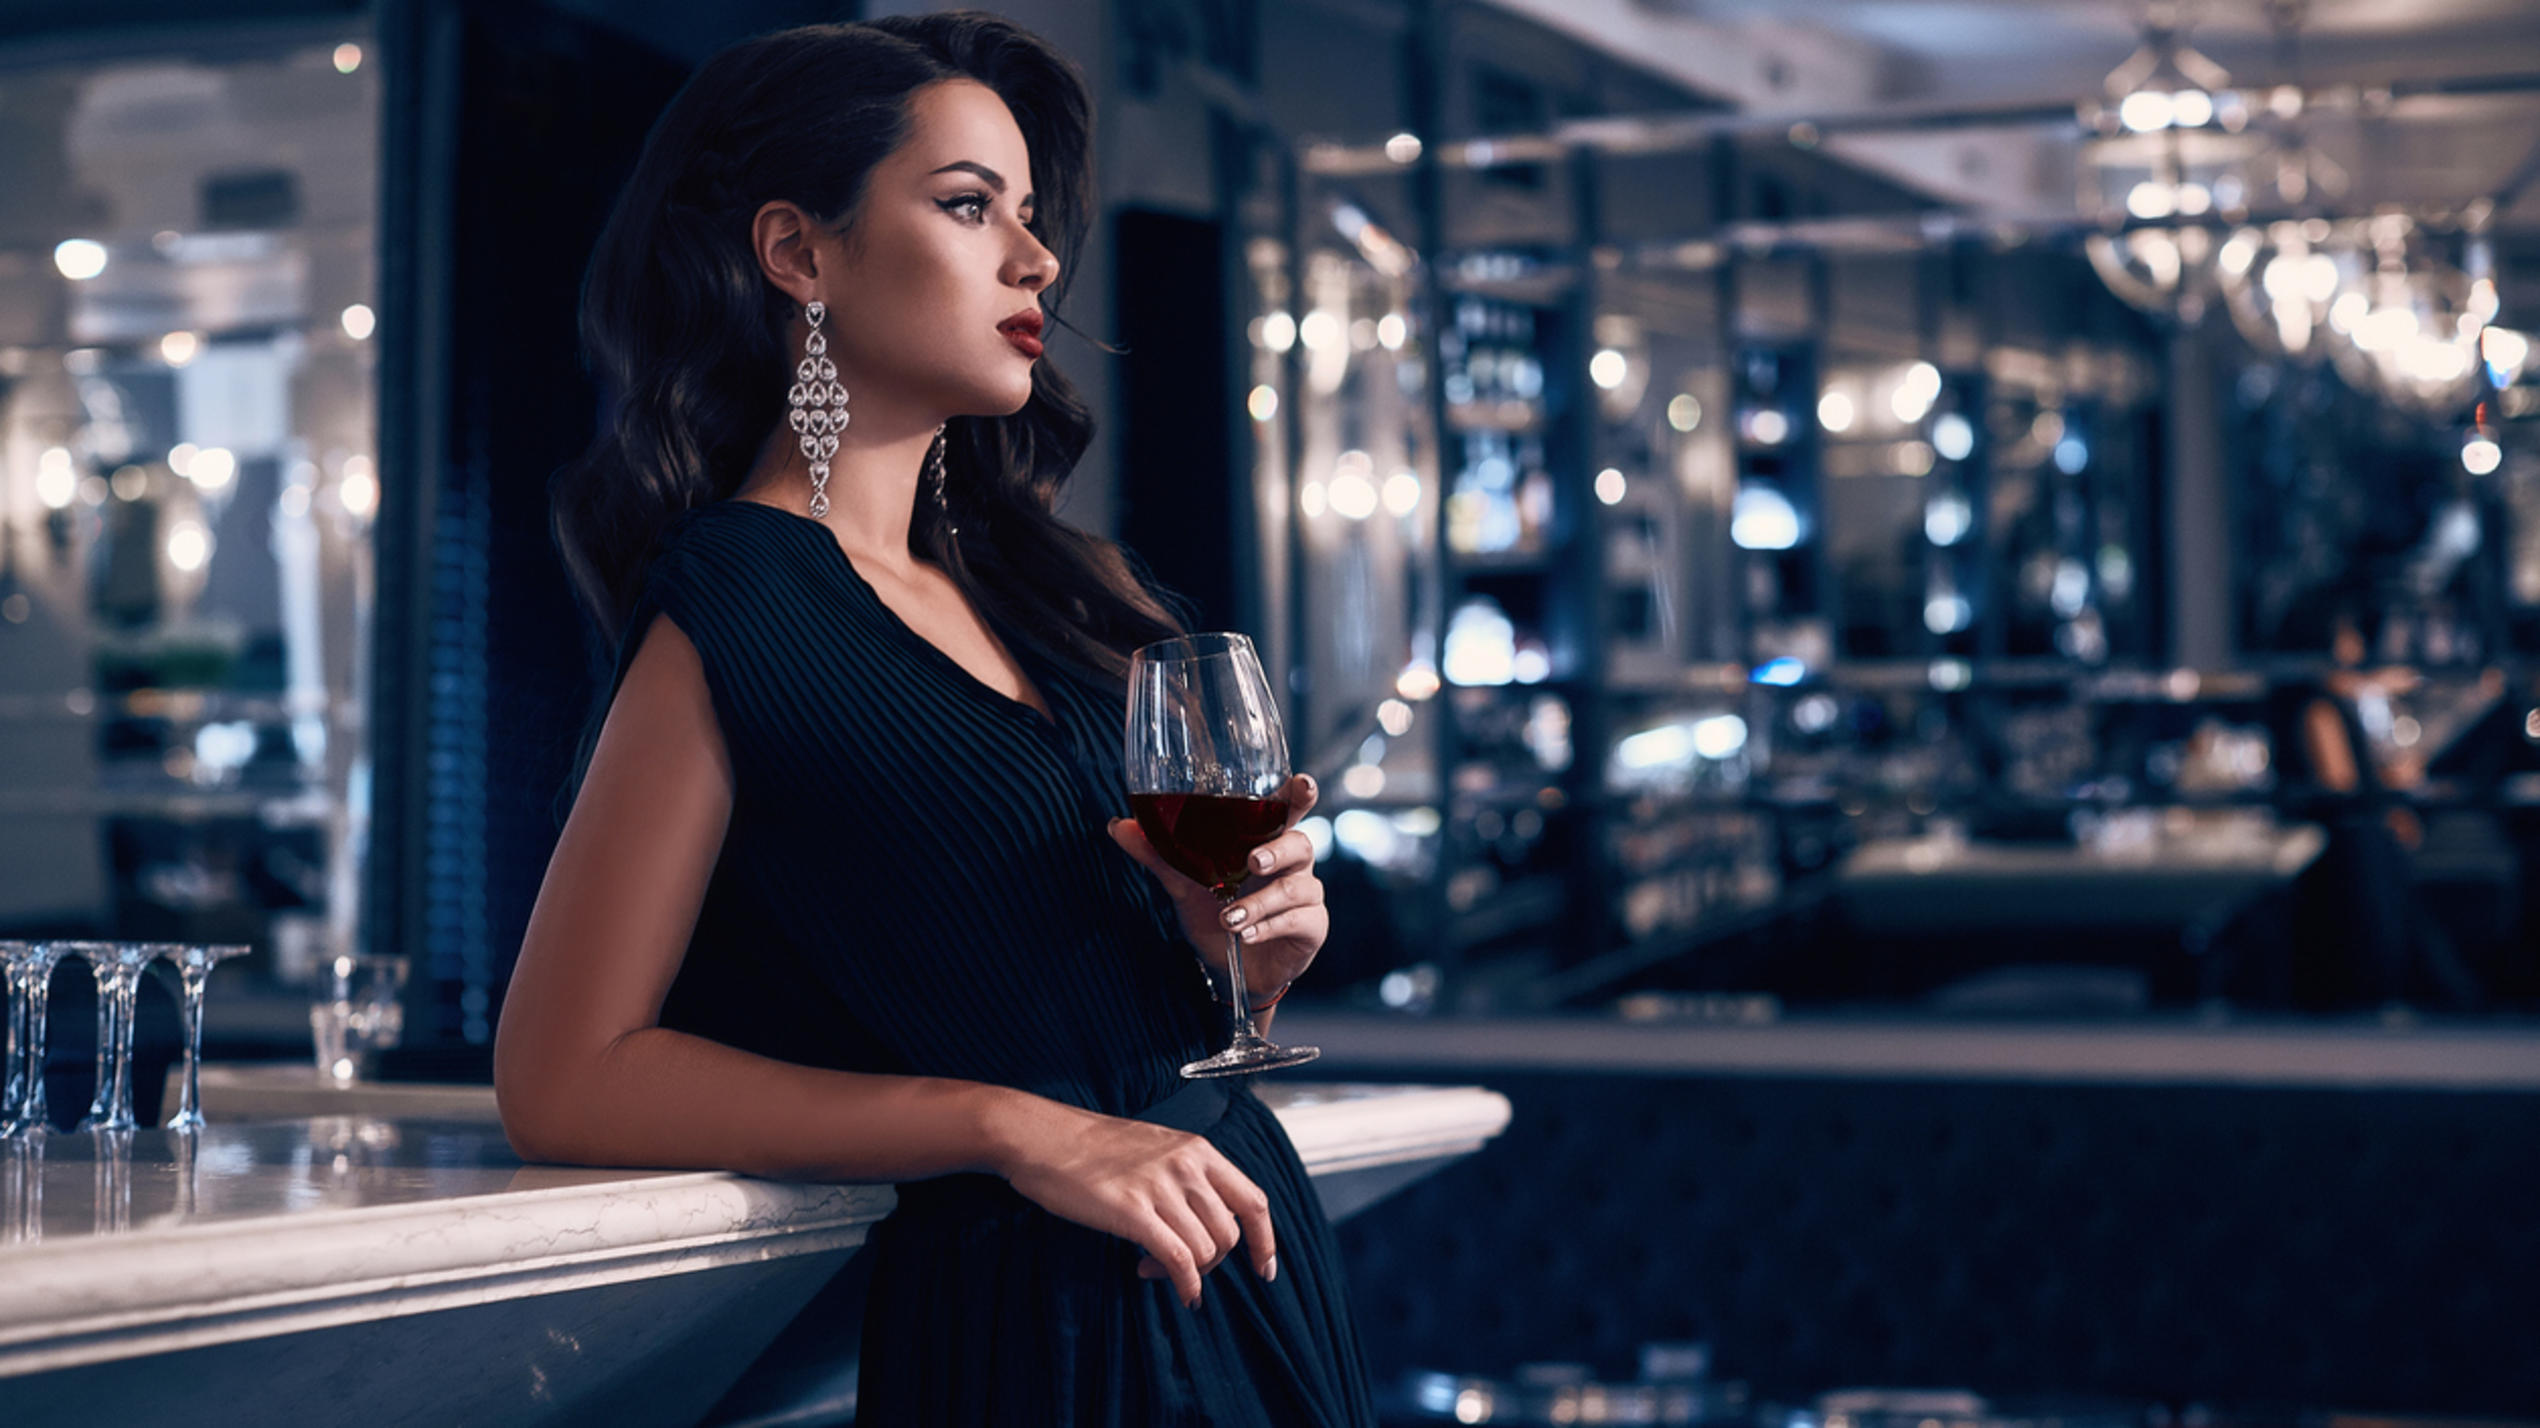 Stilvolle Frau in elegantem Kleid mit einem Glas Wein in der Hand